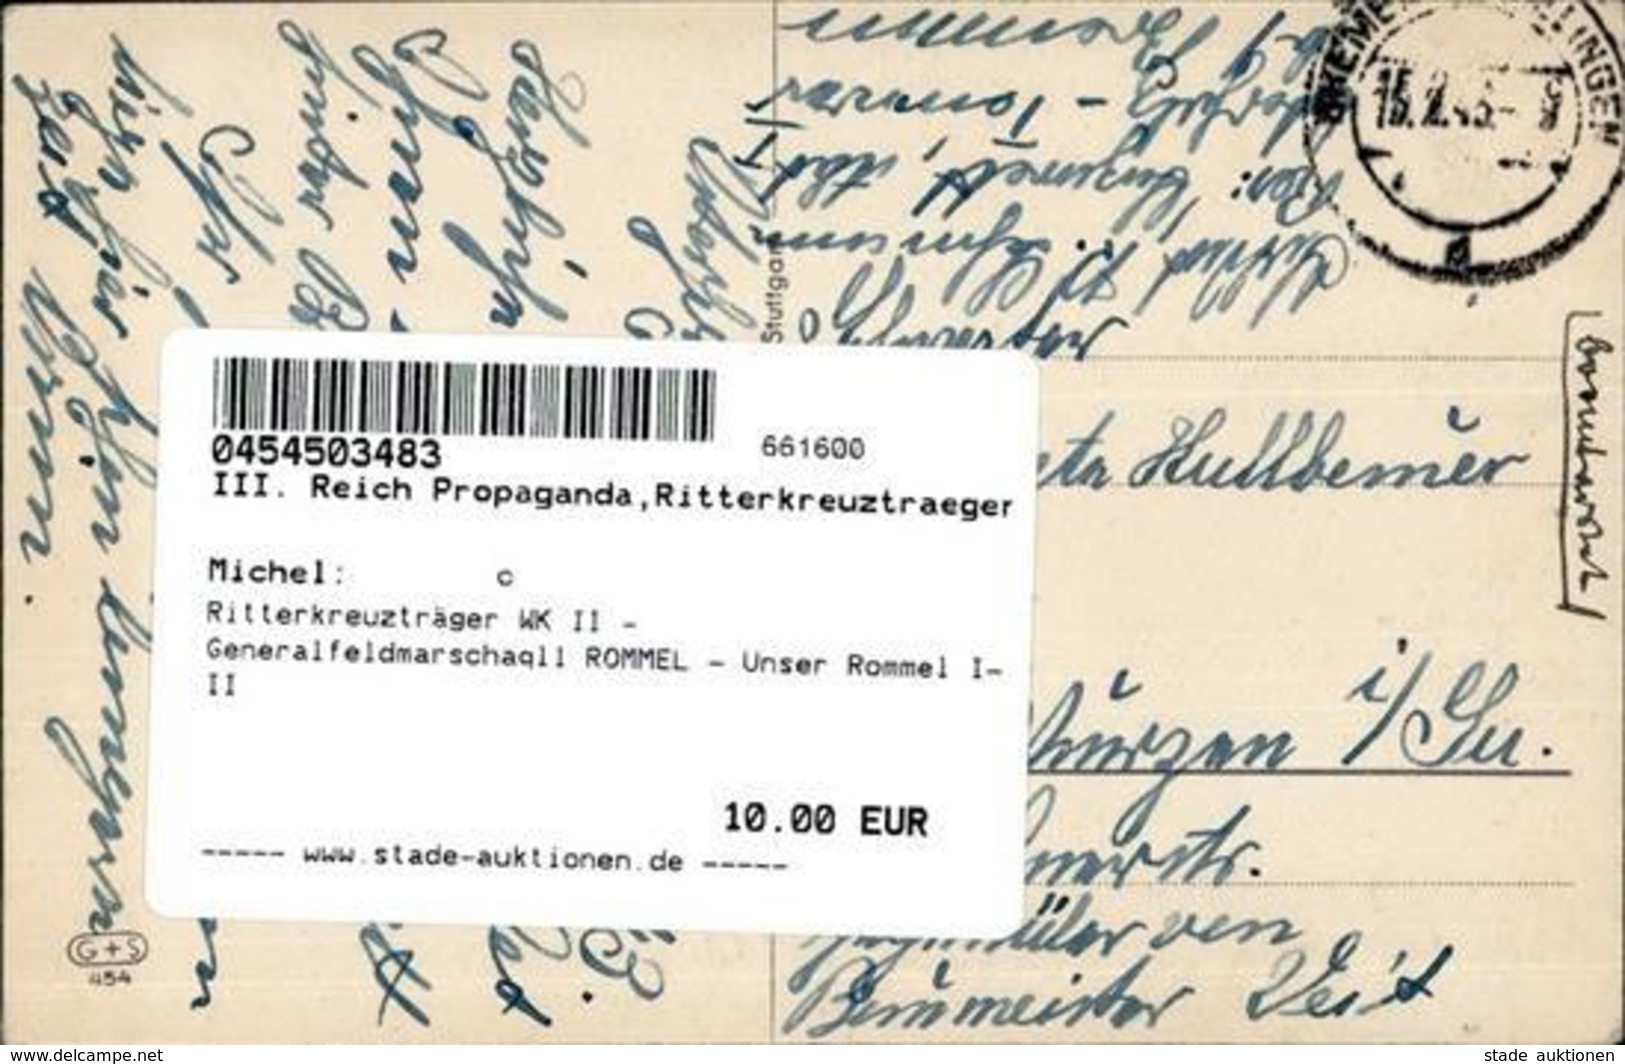 Ritterkreuzträger WK II - Generalfeldmarschaqll ROMMEL - Unser Rommel I-II - War 1939-45